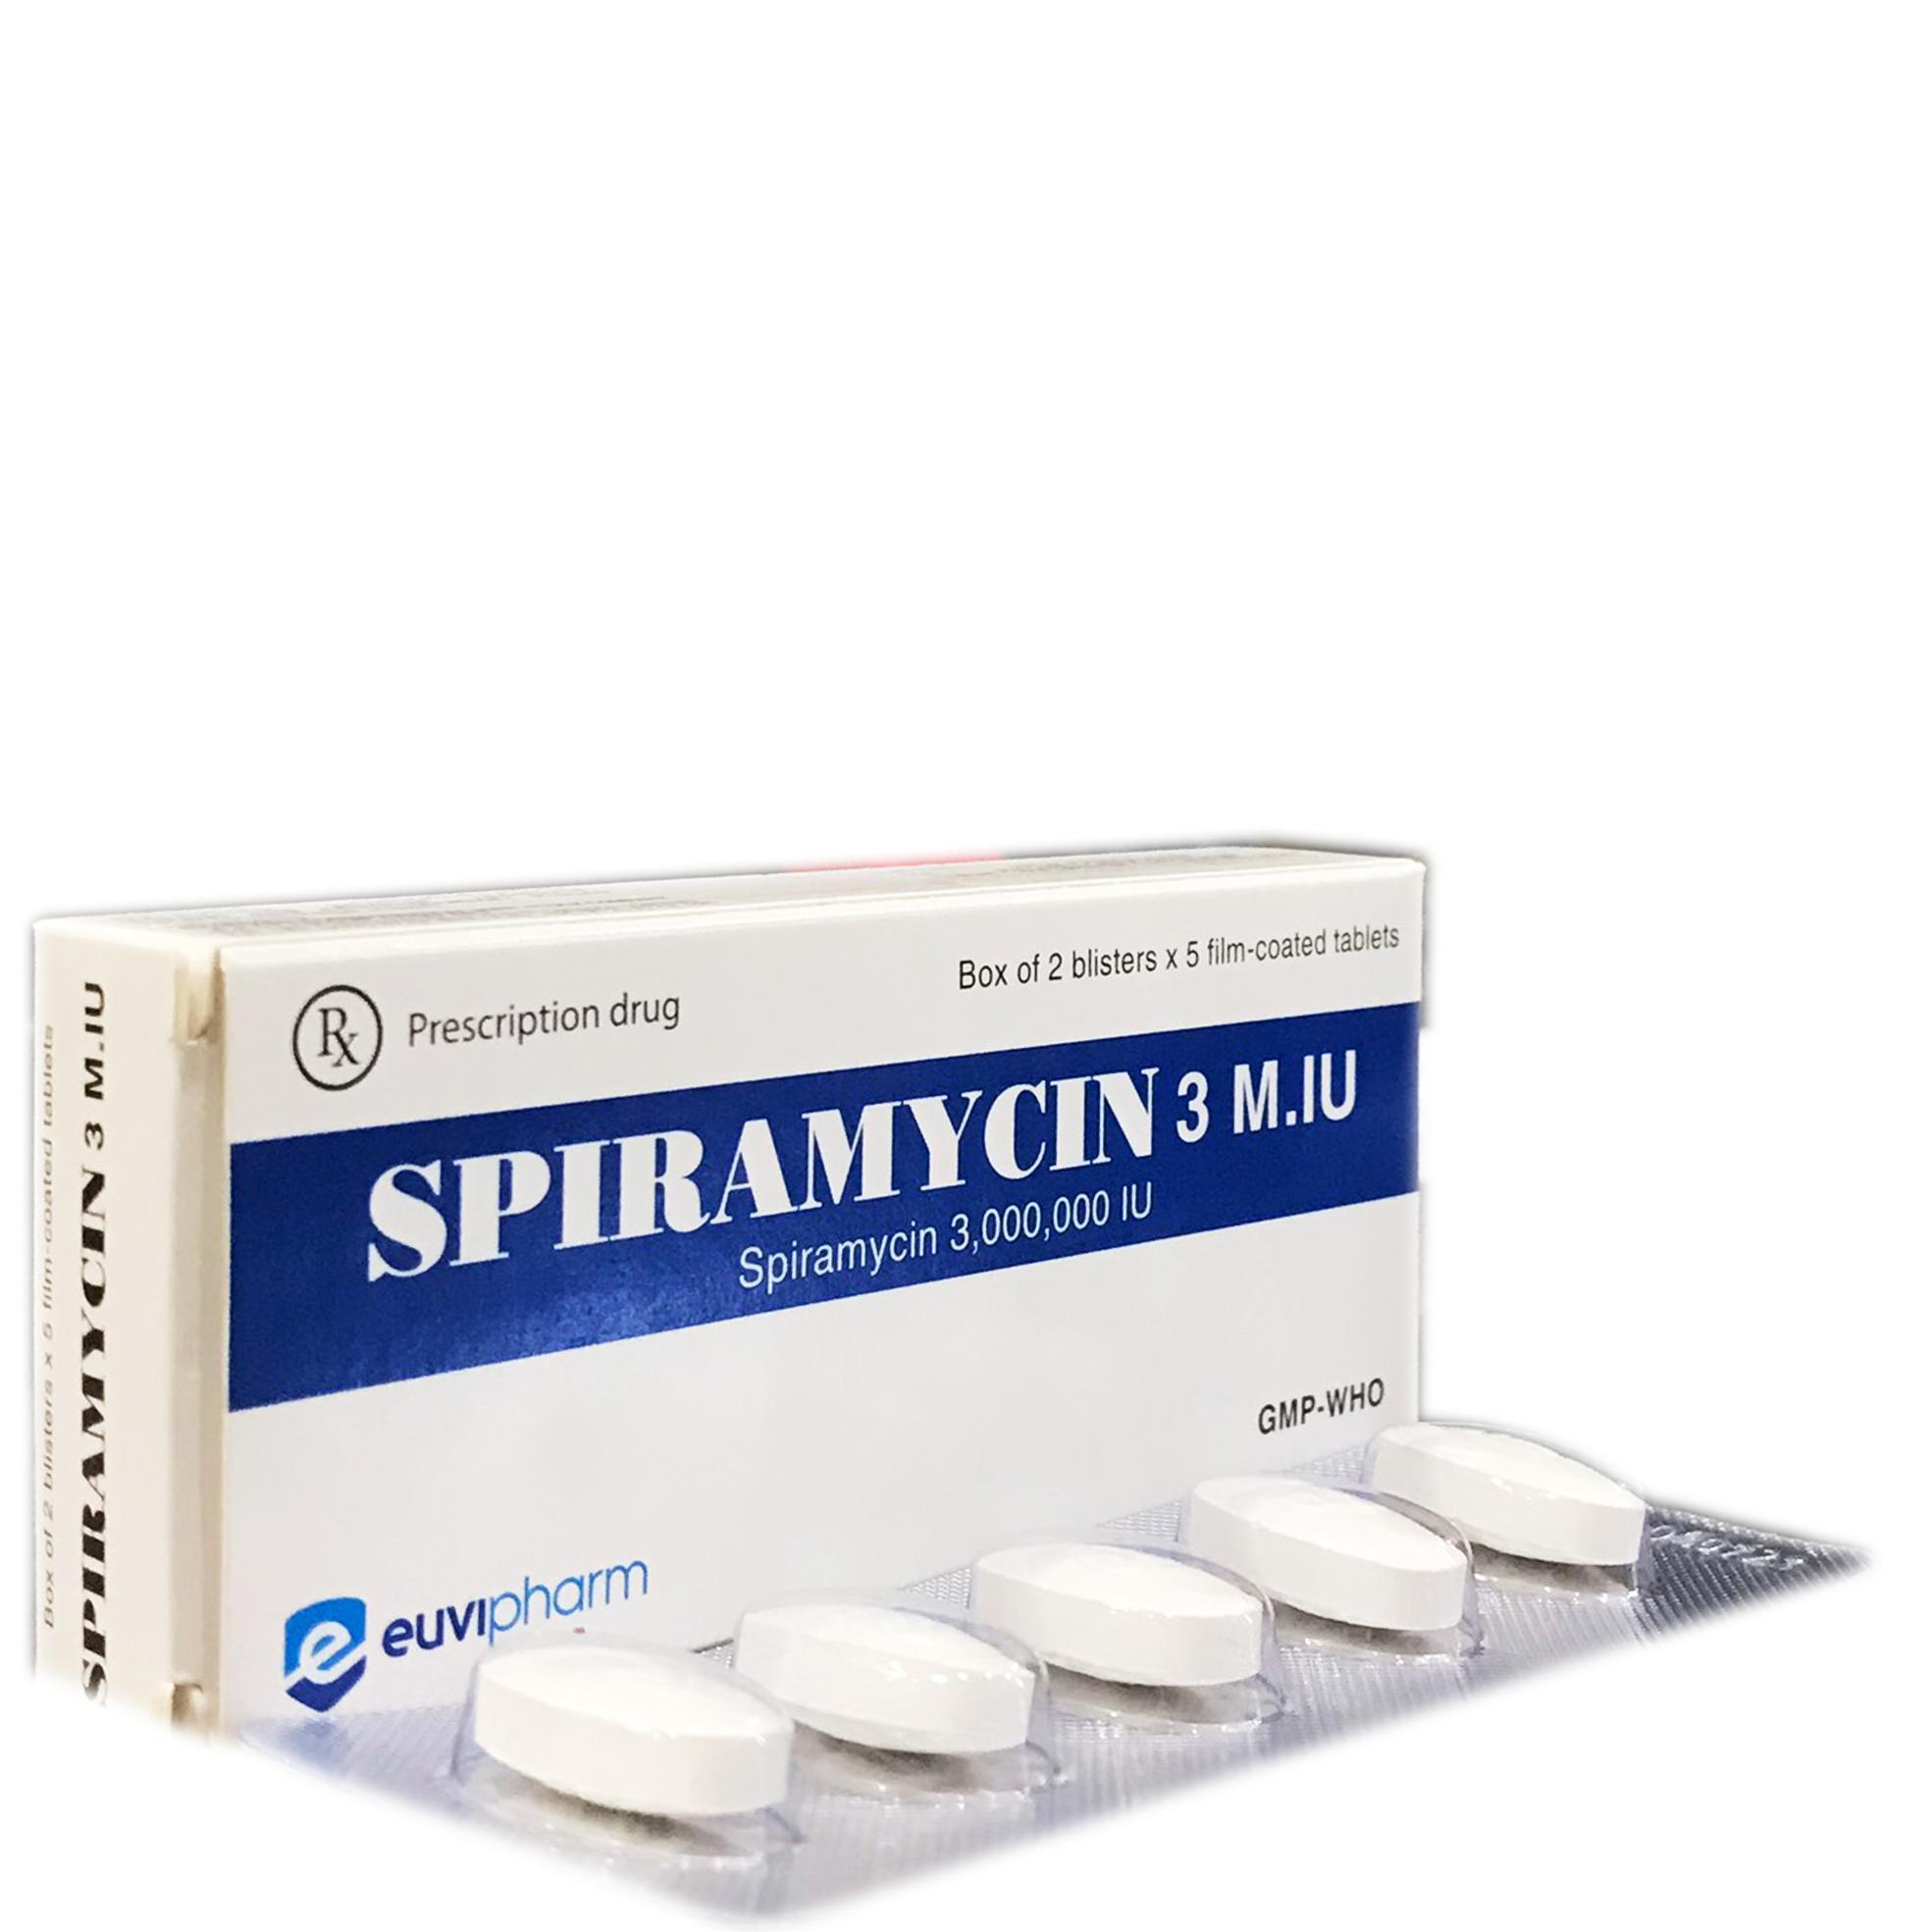 Spiramycin 3M.IU Euvipharm (H/10v)